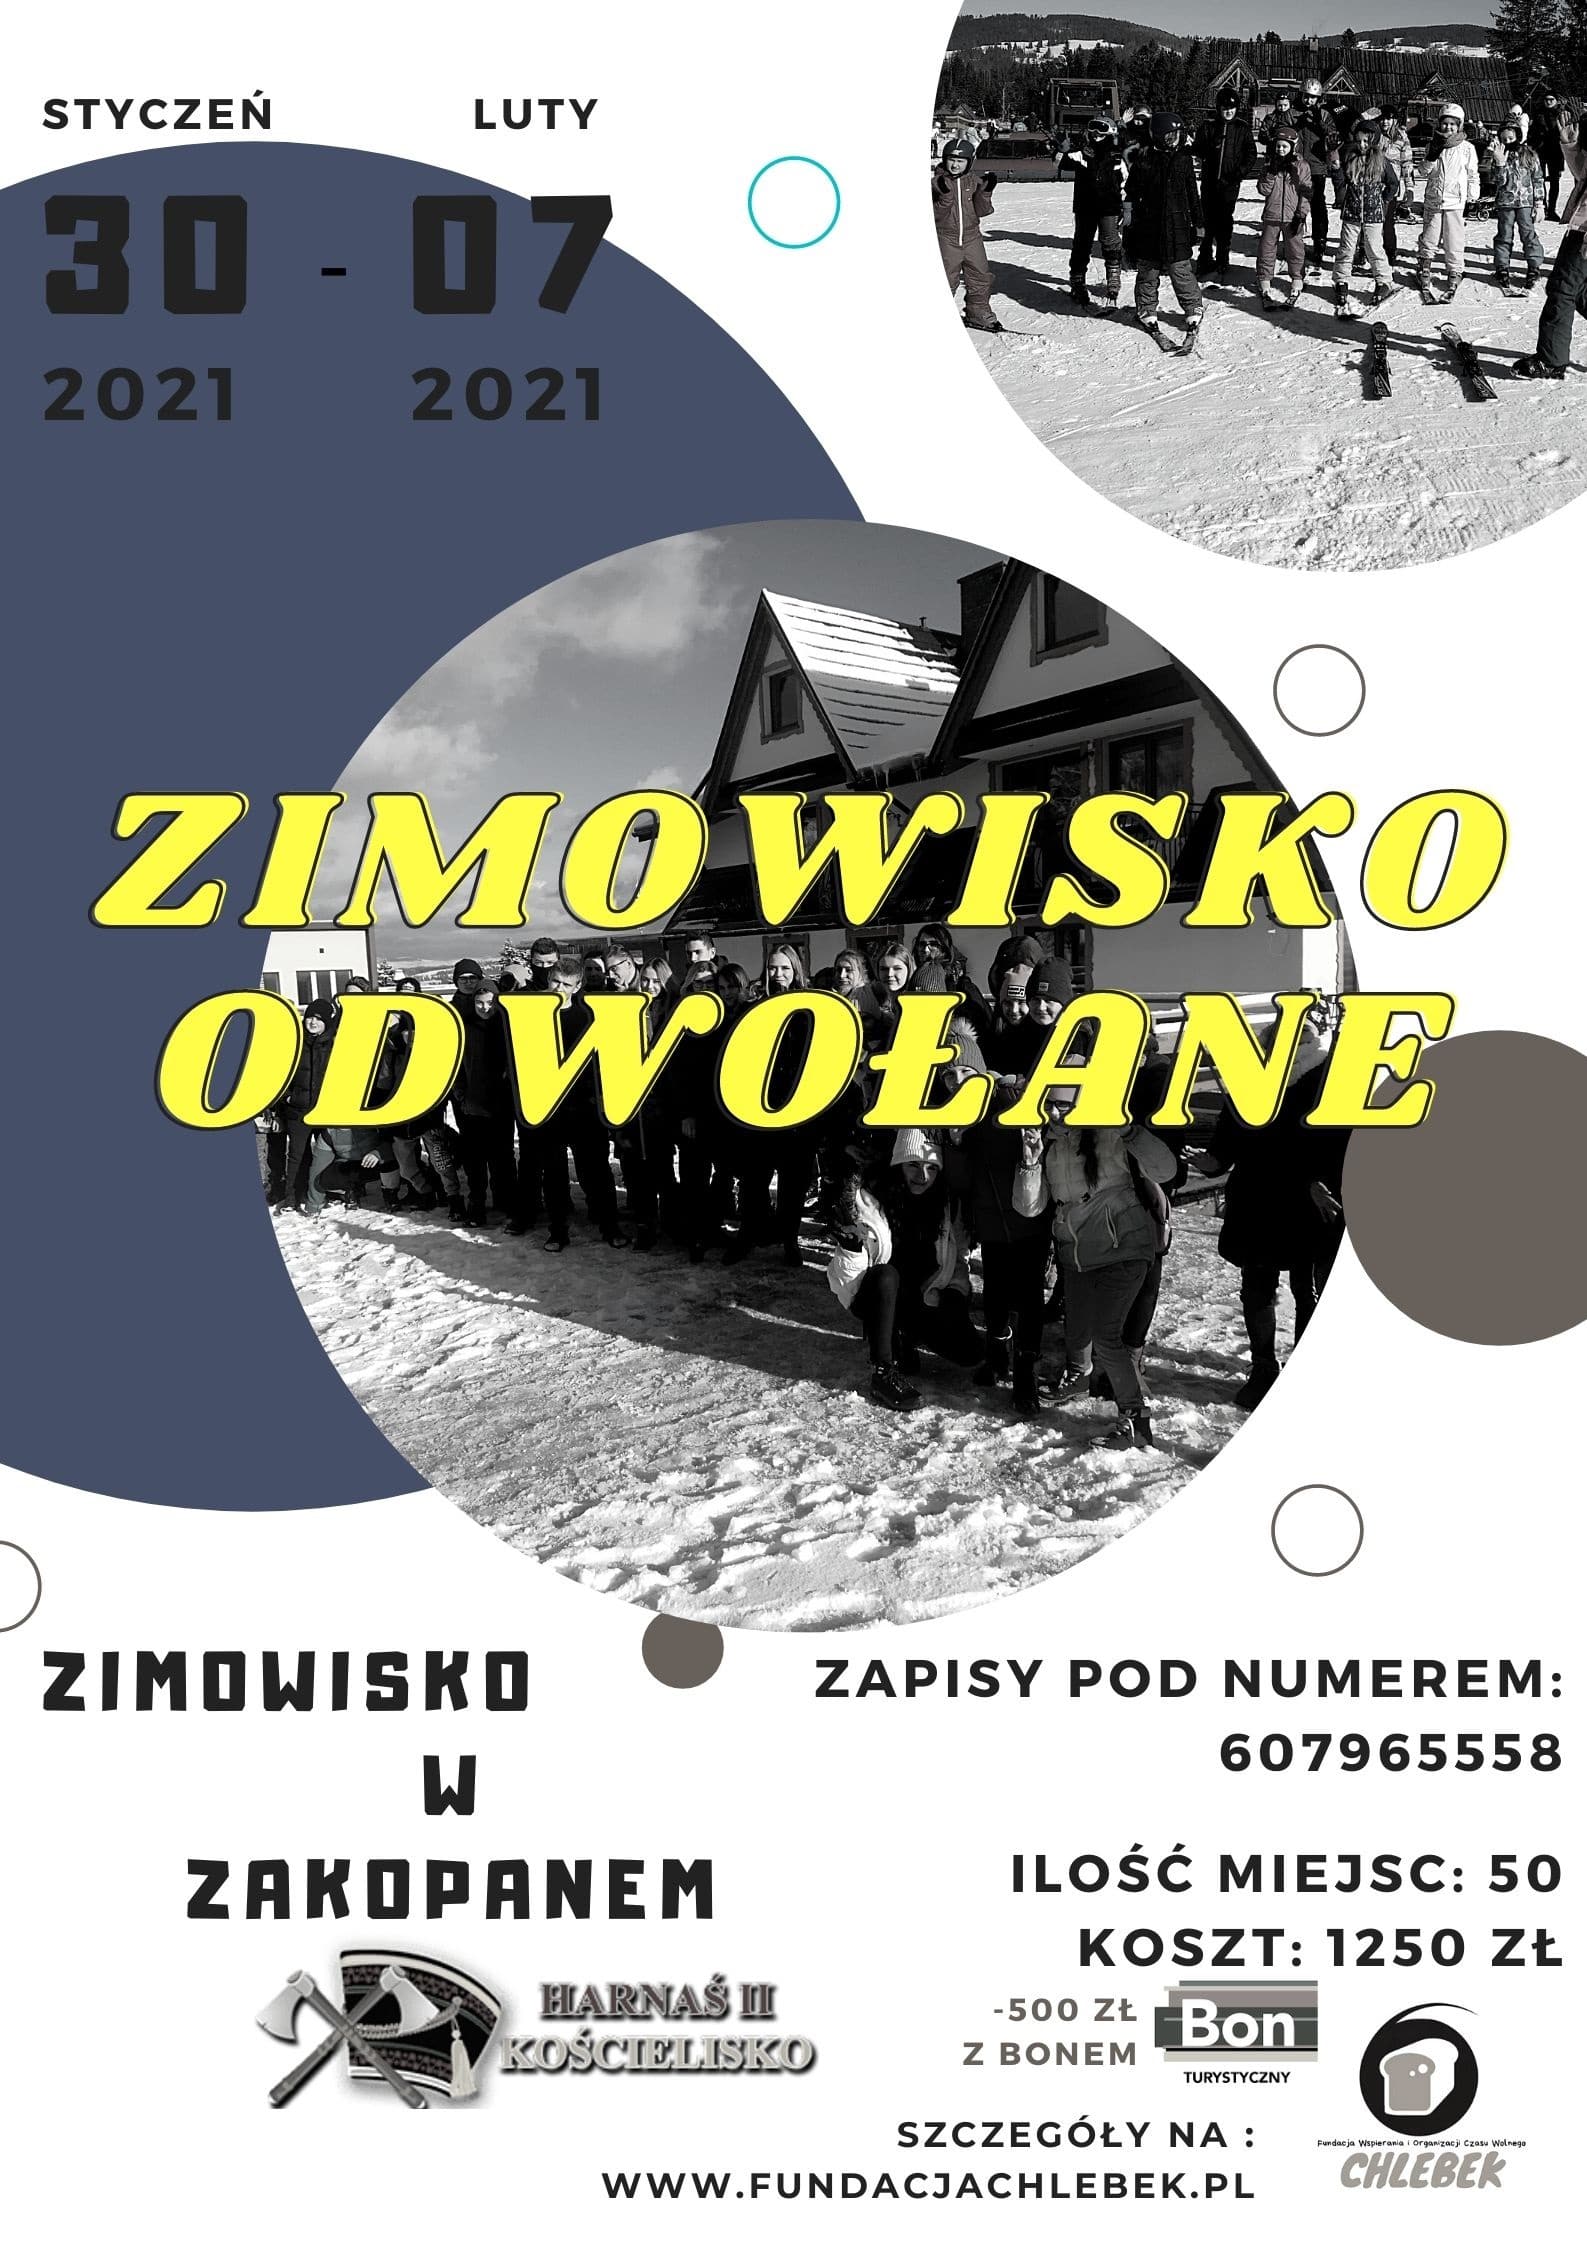 ZIMOWISKO – Odwołane :(